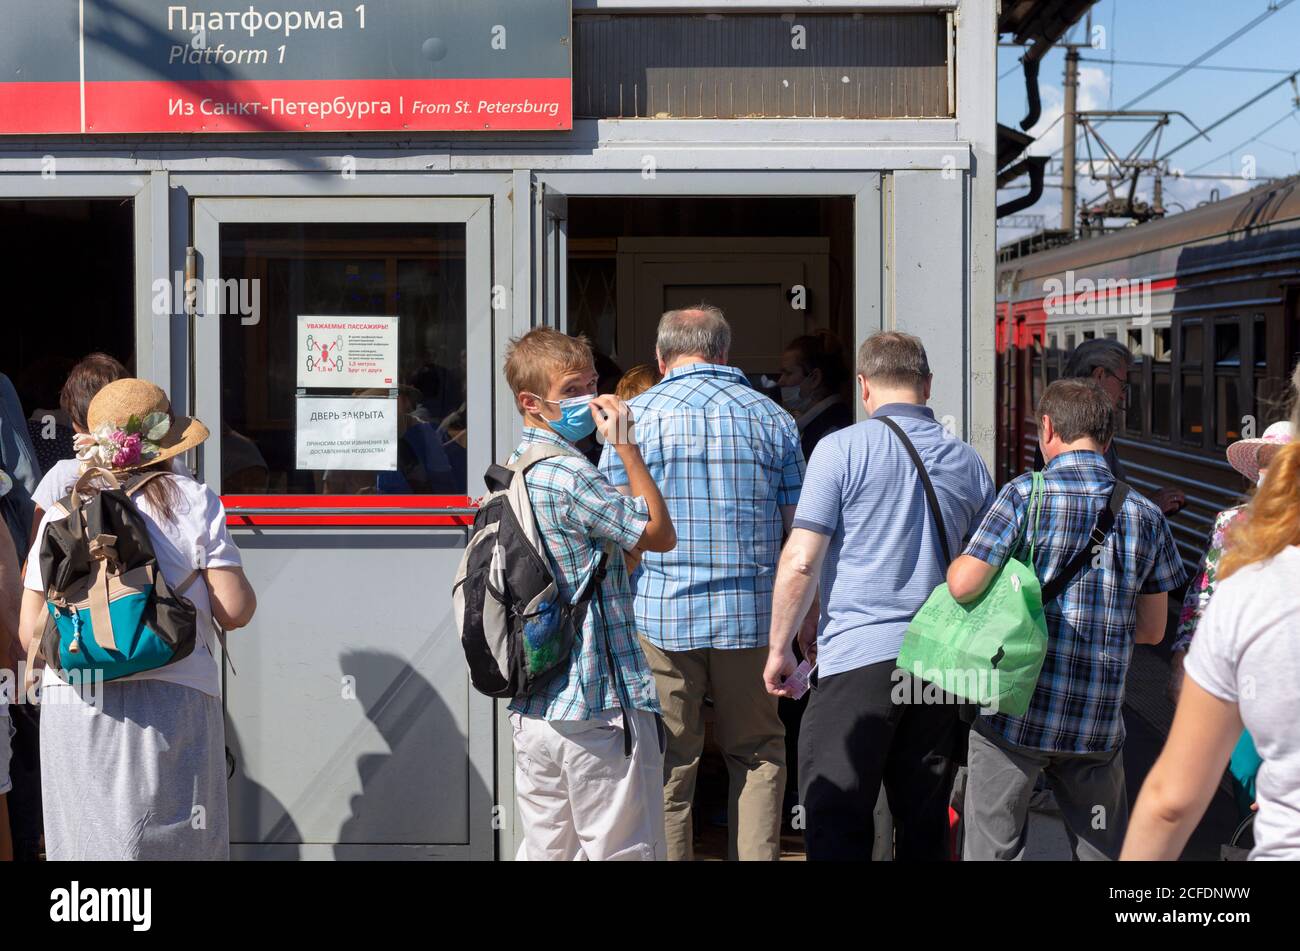 San Pietroburgo, Russia - 08 agosto 2020: I passeggeri in arrivo dal treno entrano nell'edificio della stazione a loro volta. Il giovane mascherato si guardò intorno. Foto Stock